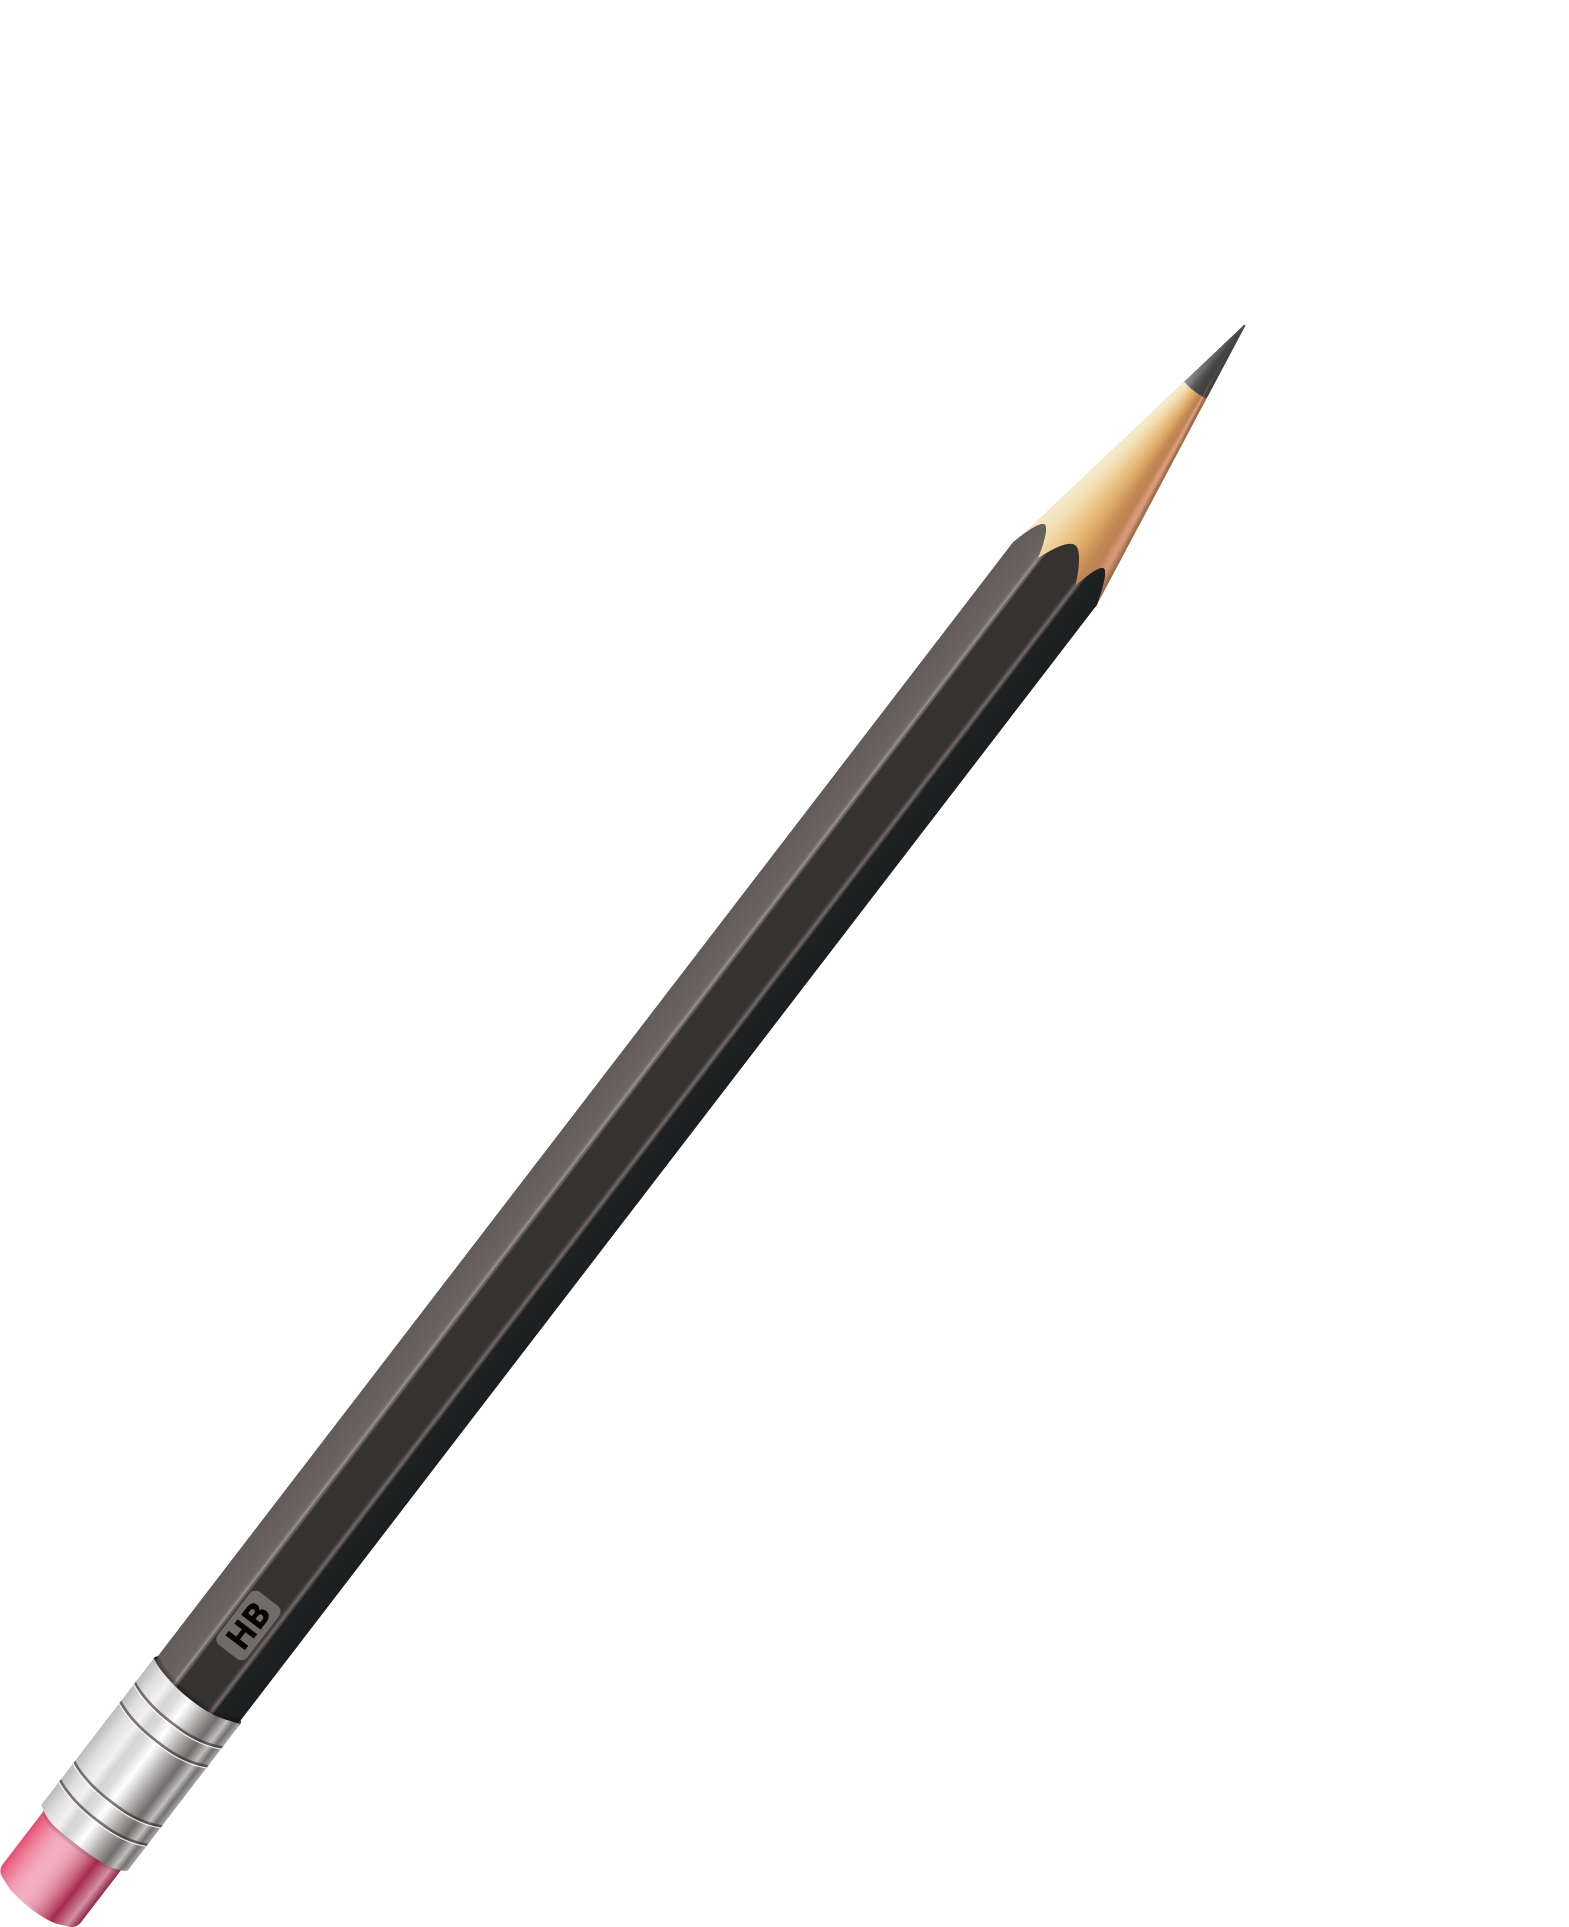 Pencil Pen Gratis Picture Download Free Image Clipart